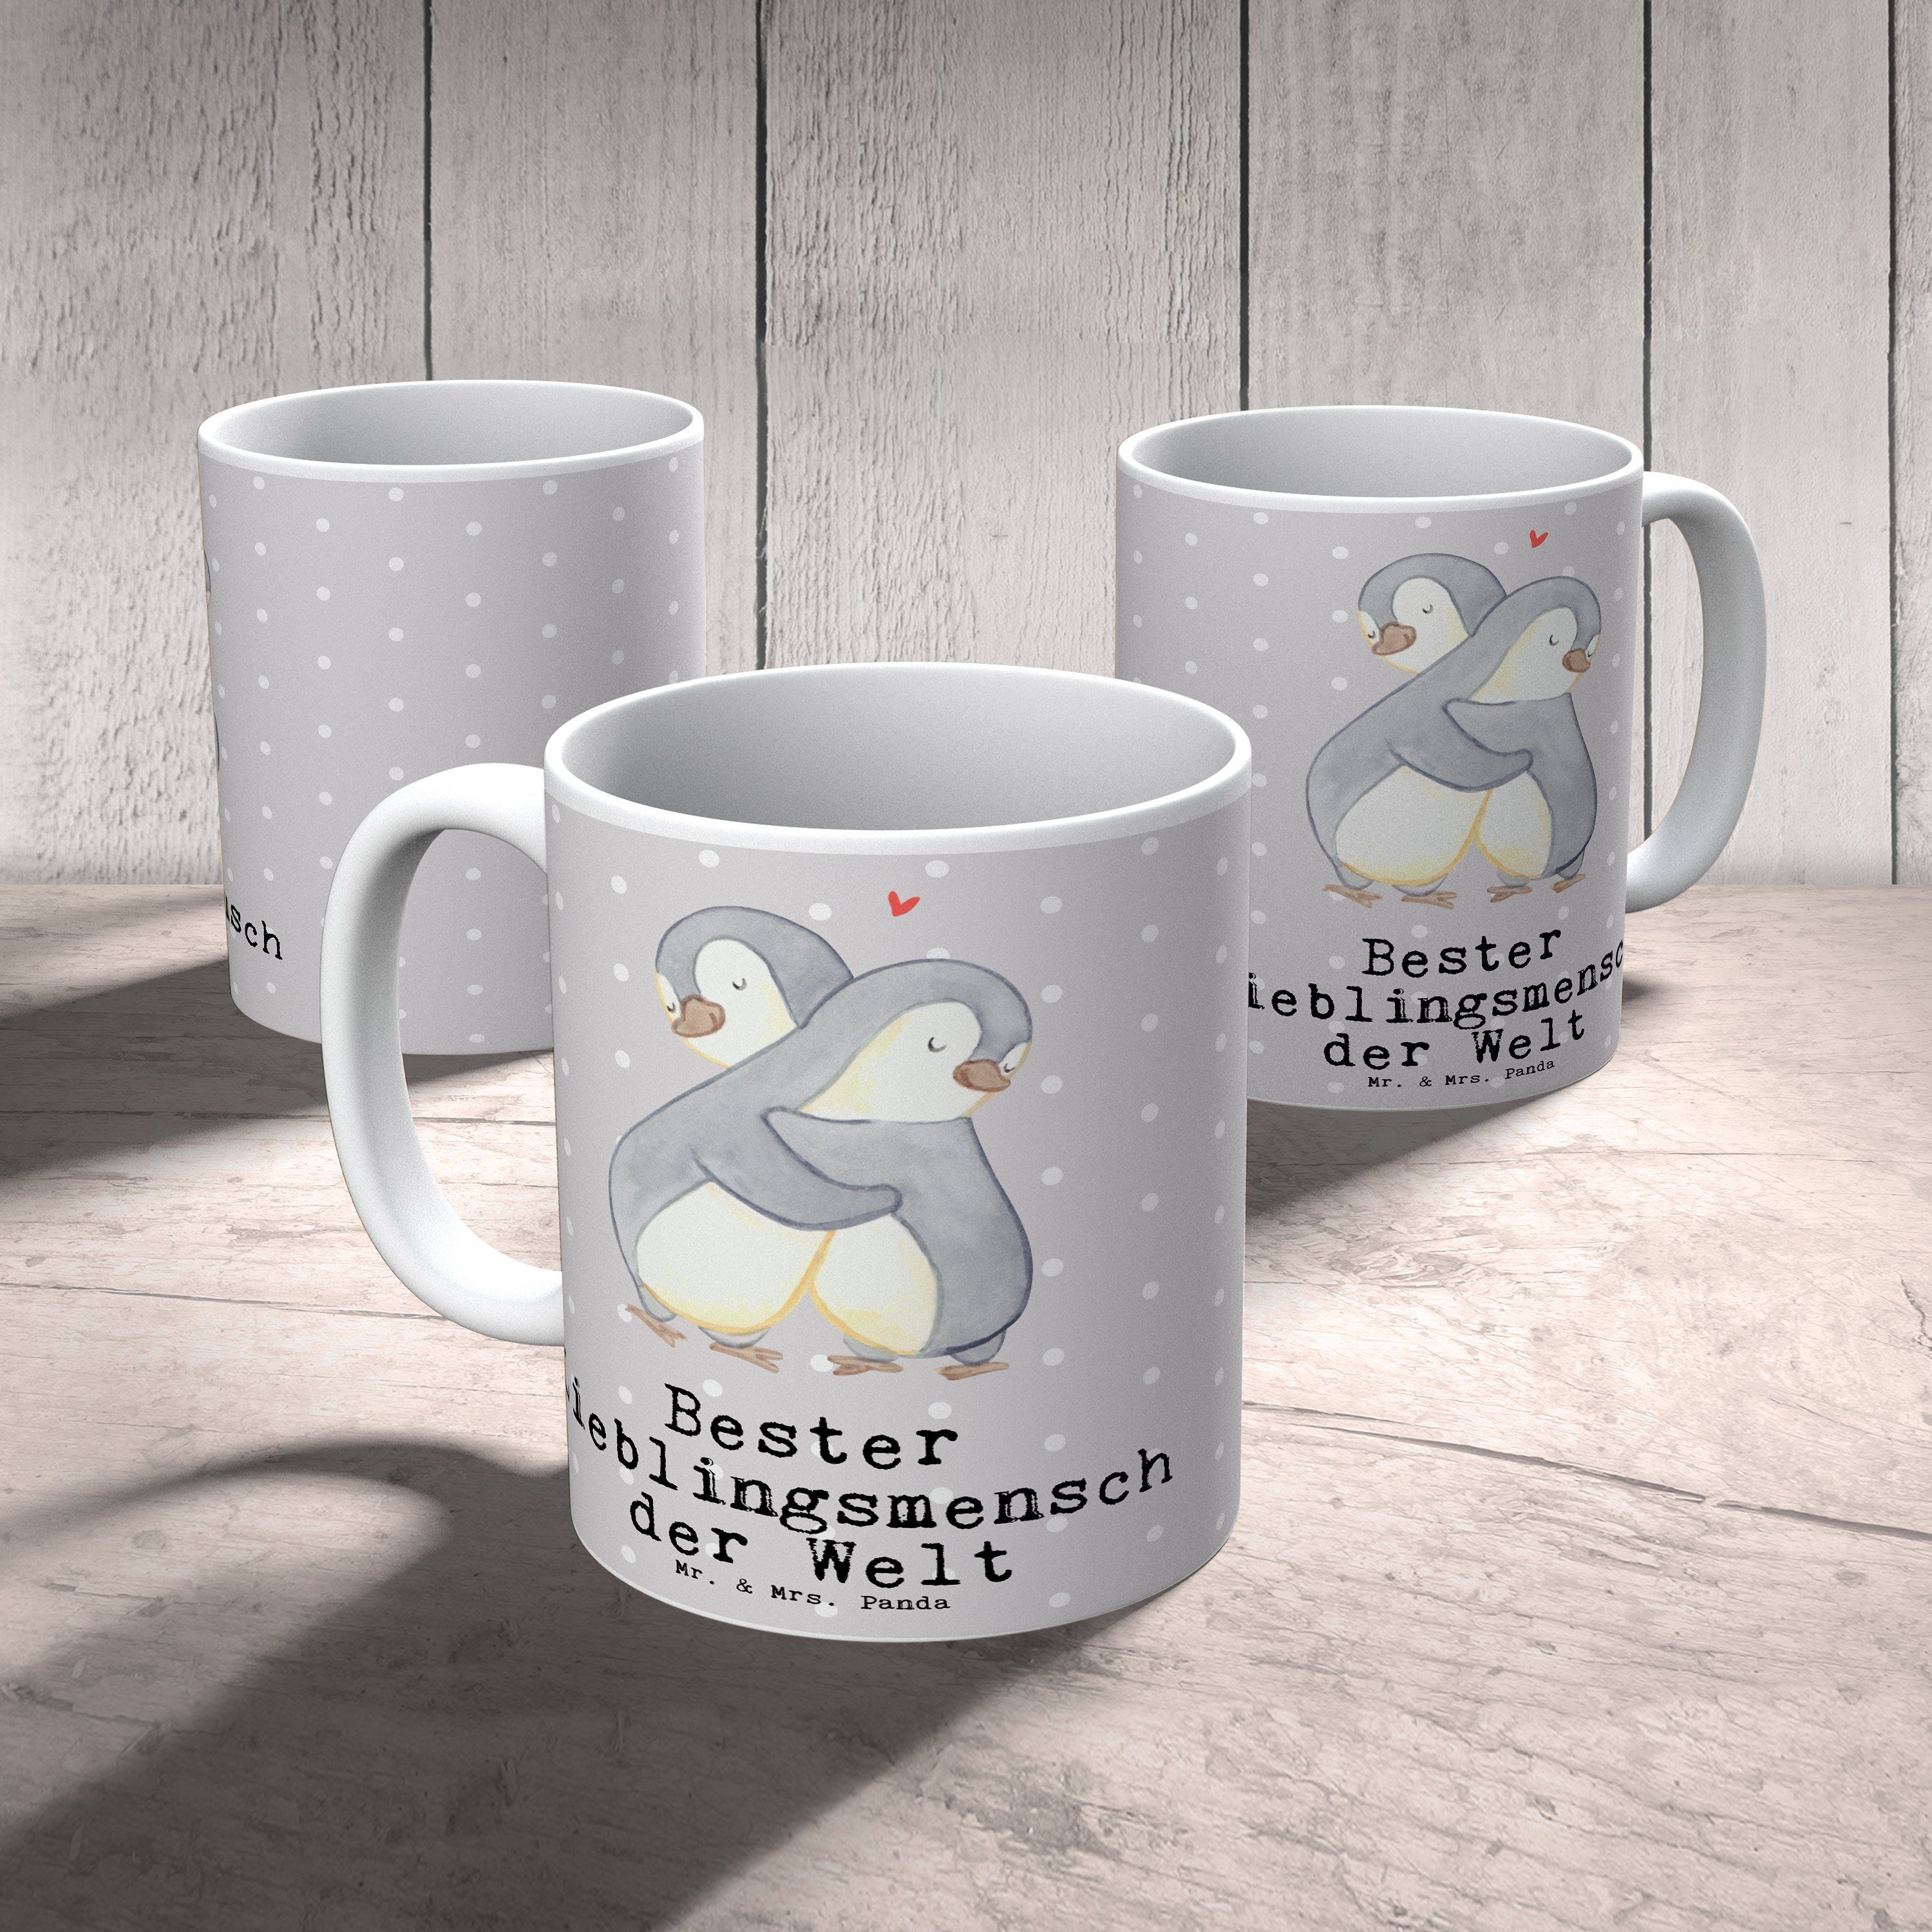 Mr. & Mrs. Panda Bester Geschenk, Lieblingsmensch Welt der - Pinguin Te, Keramik Pastell Tasse - Grau